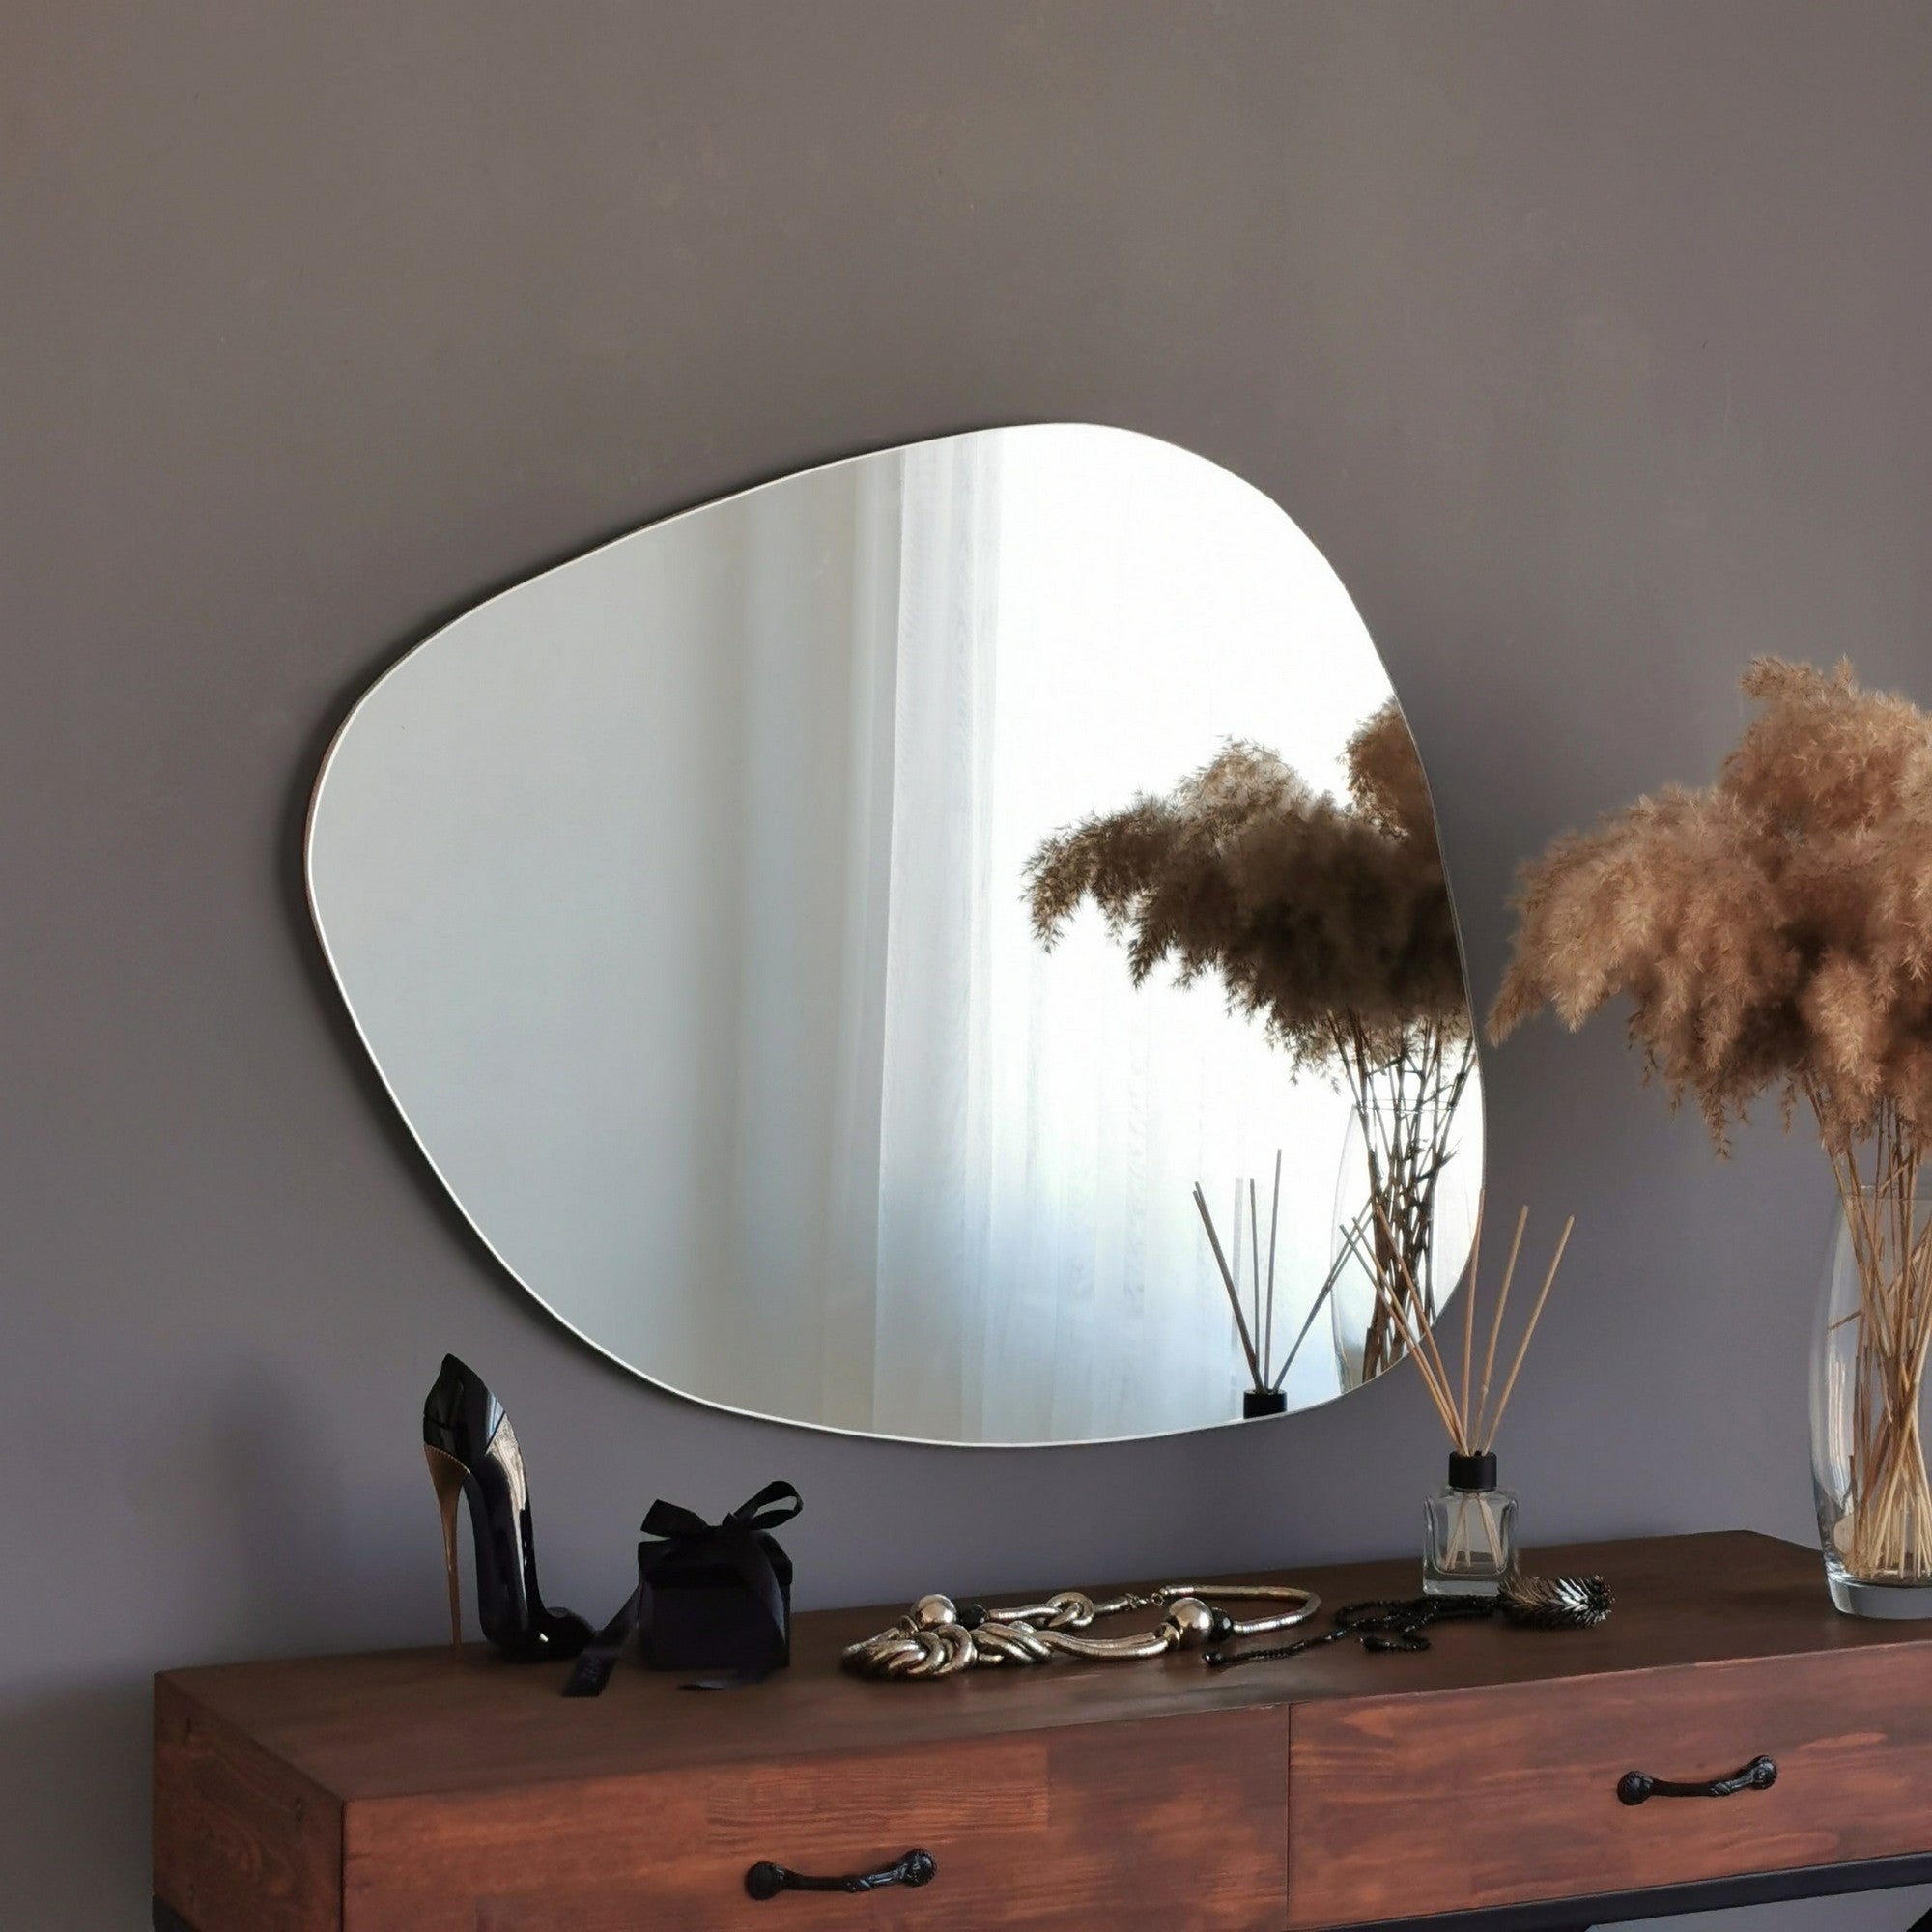 Specchio design da parete forma irregolare moderno – Colly Shop